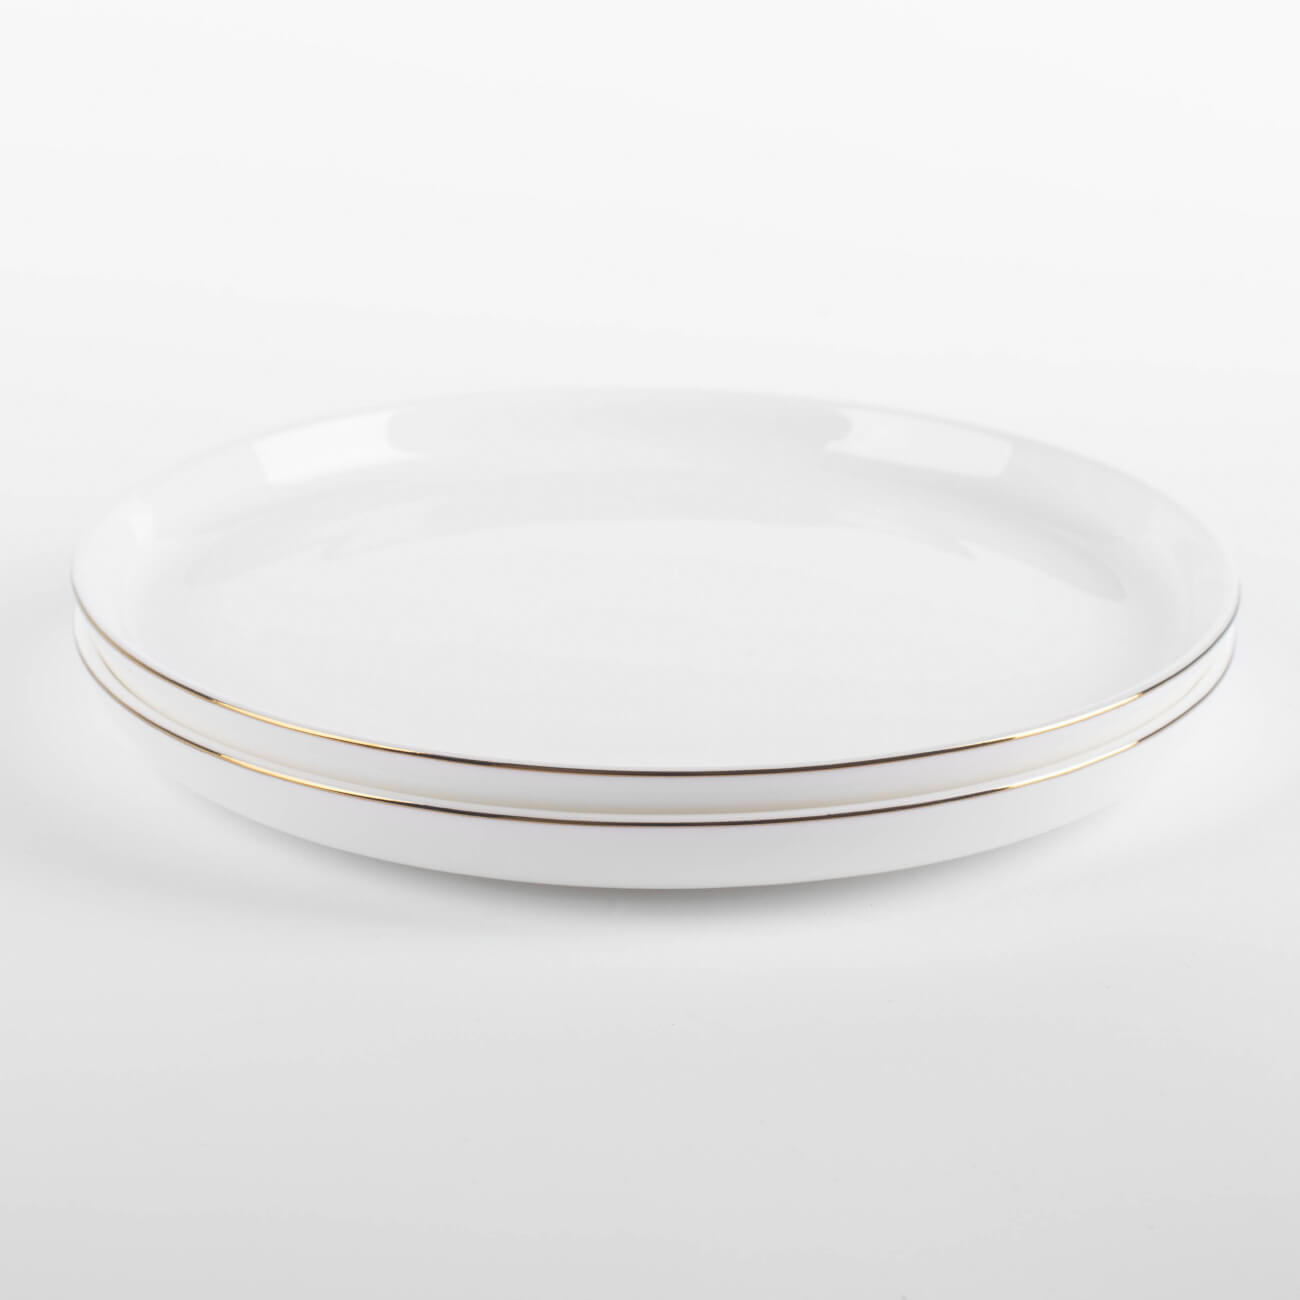 тарелка десертная 20 см 2 шт фарфор f белая ideal white Тарелка десертная, 20 см, 2 шт, фарфор F, белая, Ideal gold